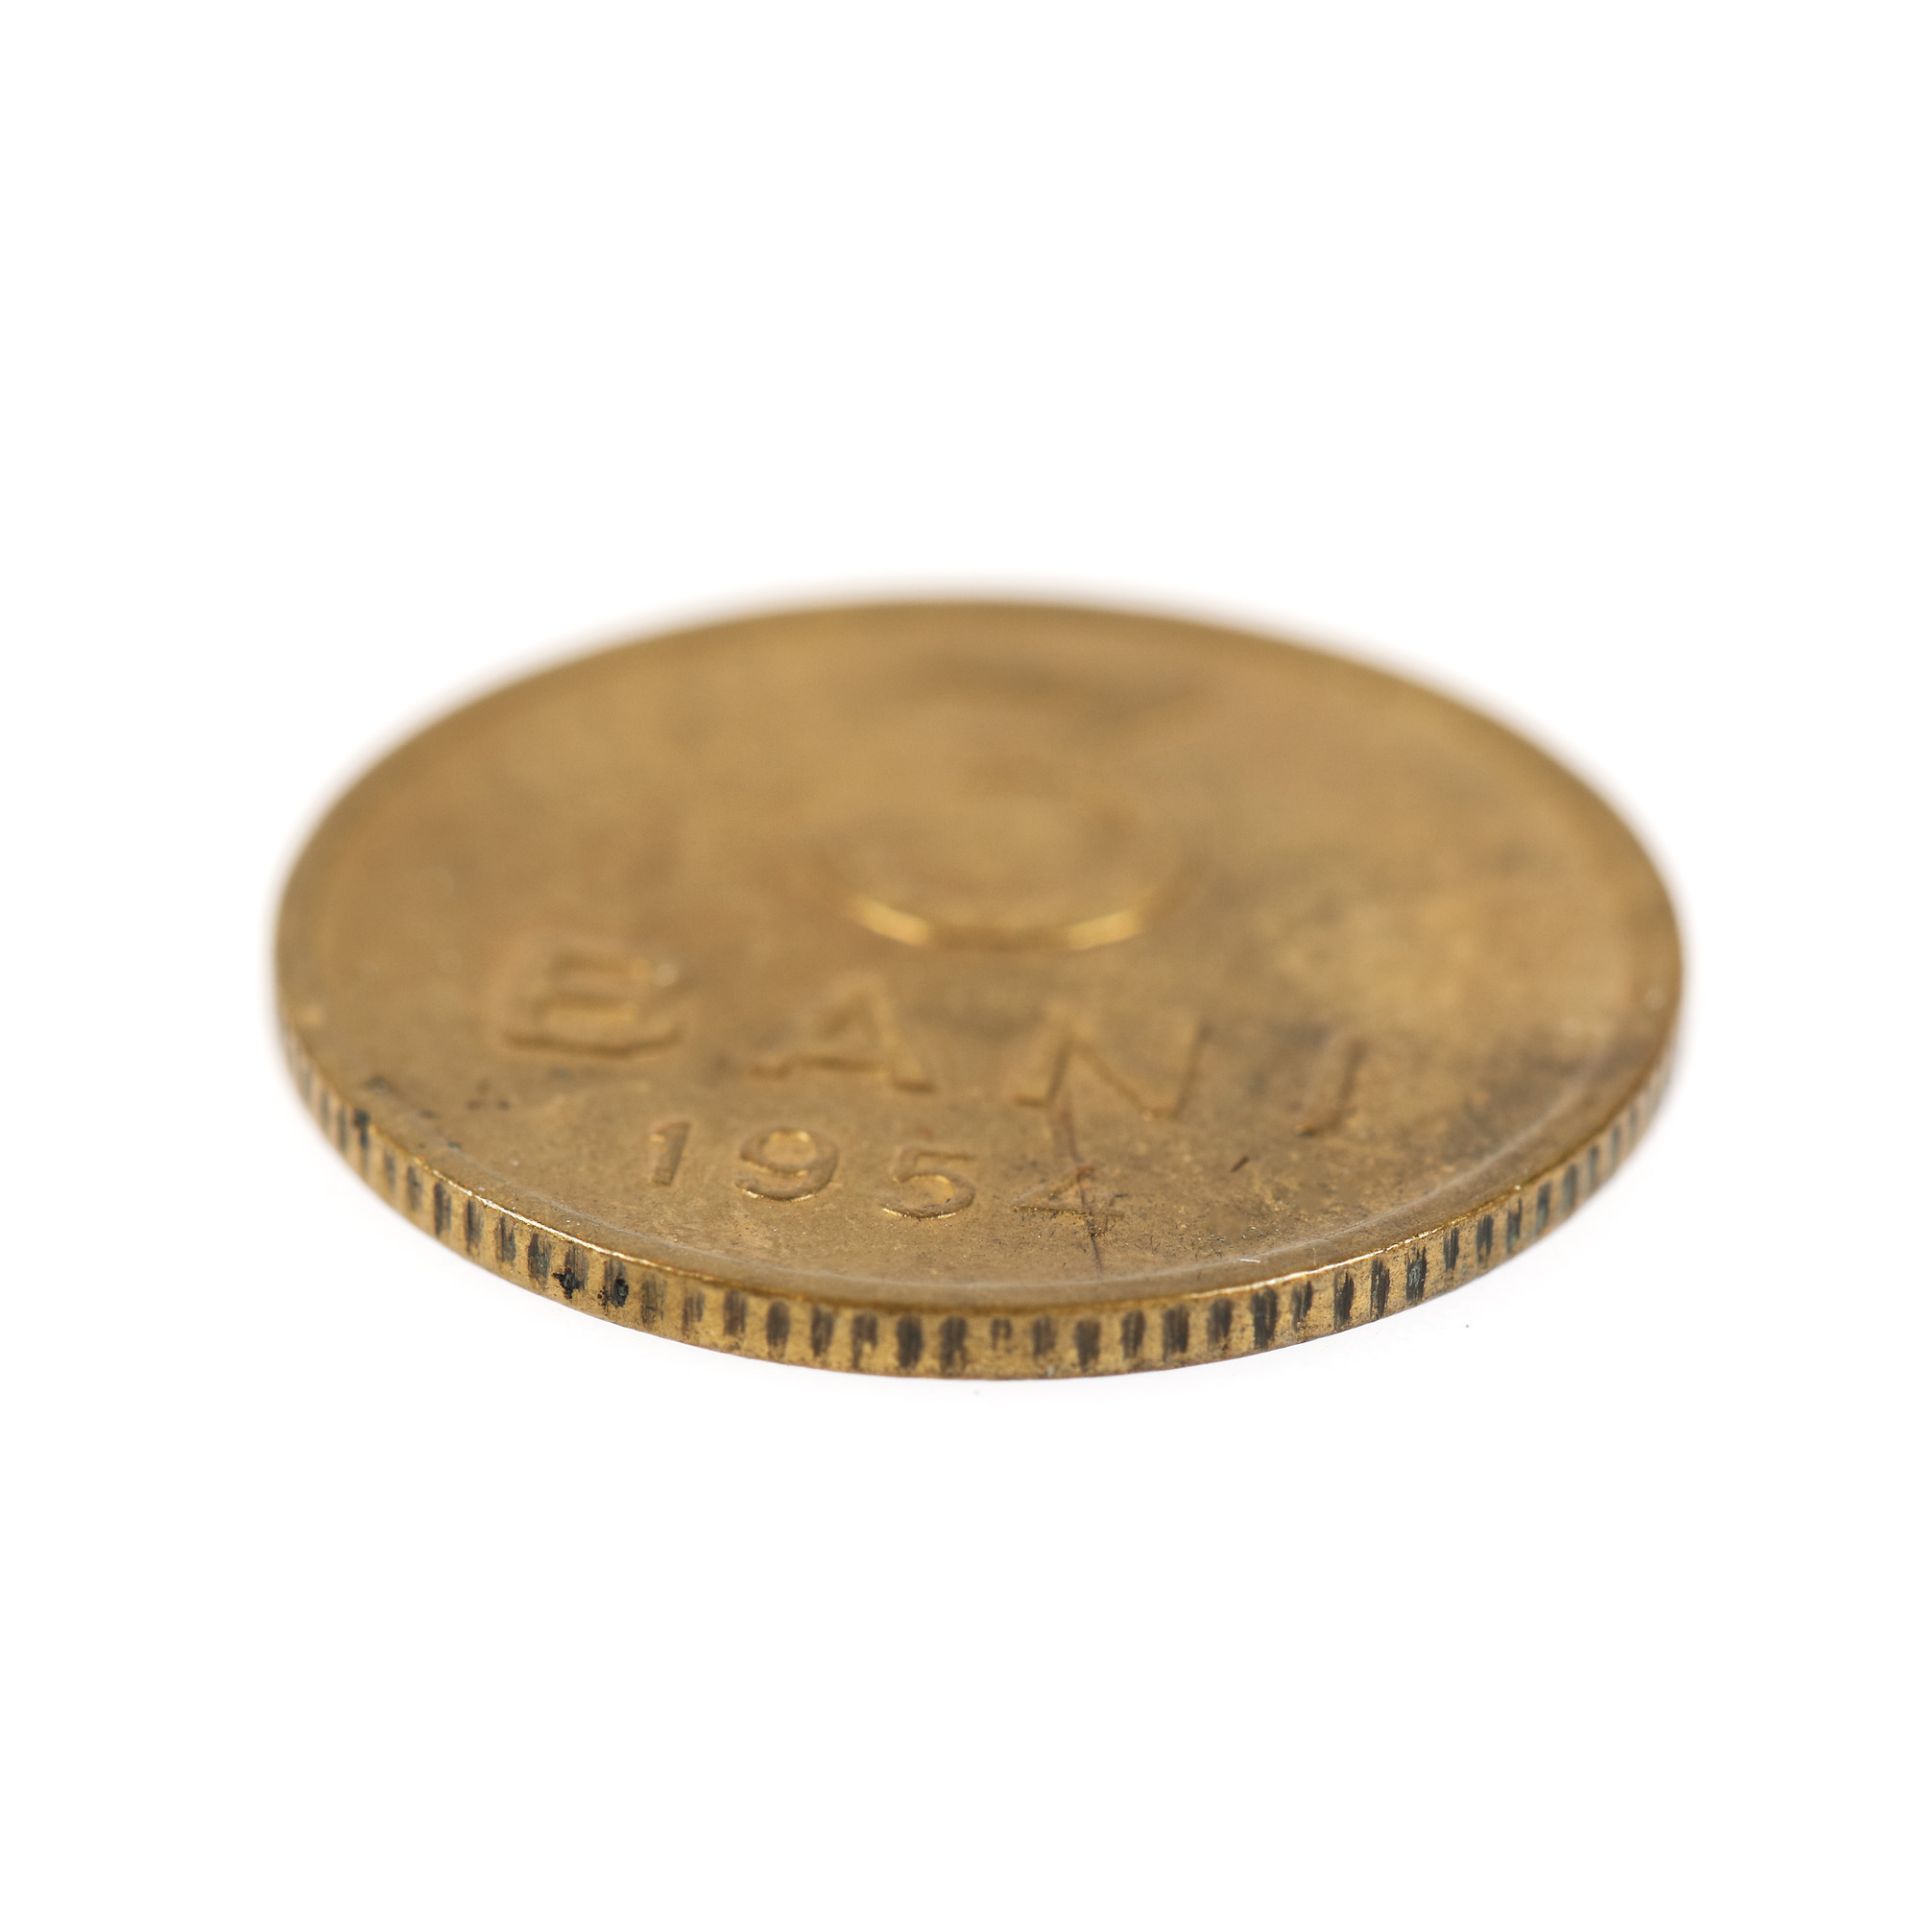 3 Bani 1954 coin - Image 3 of 3